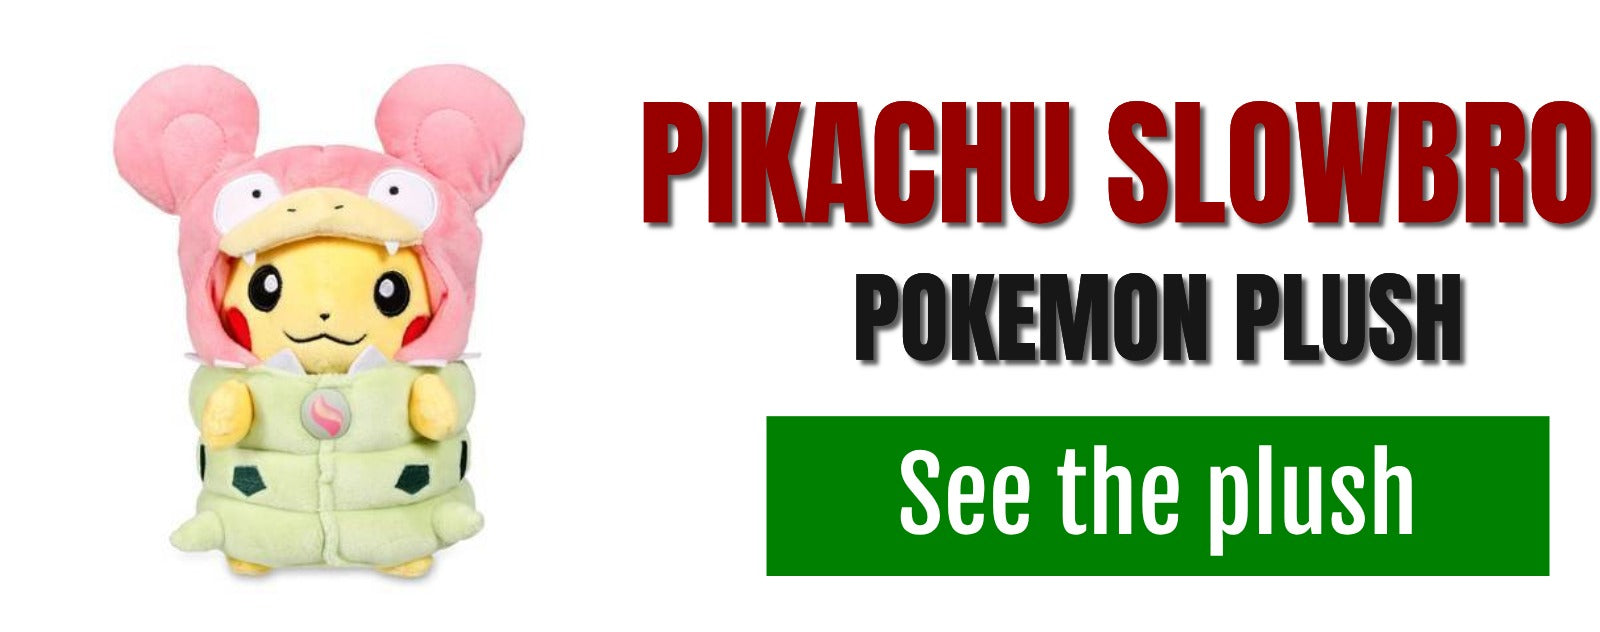 King's rock in pokemon go pikachu slowbro